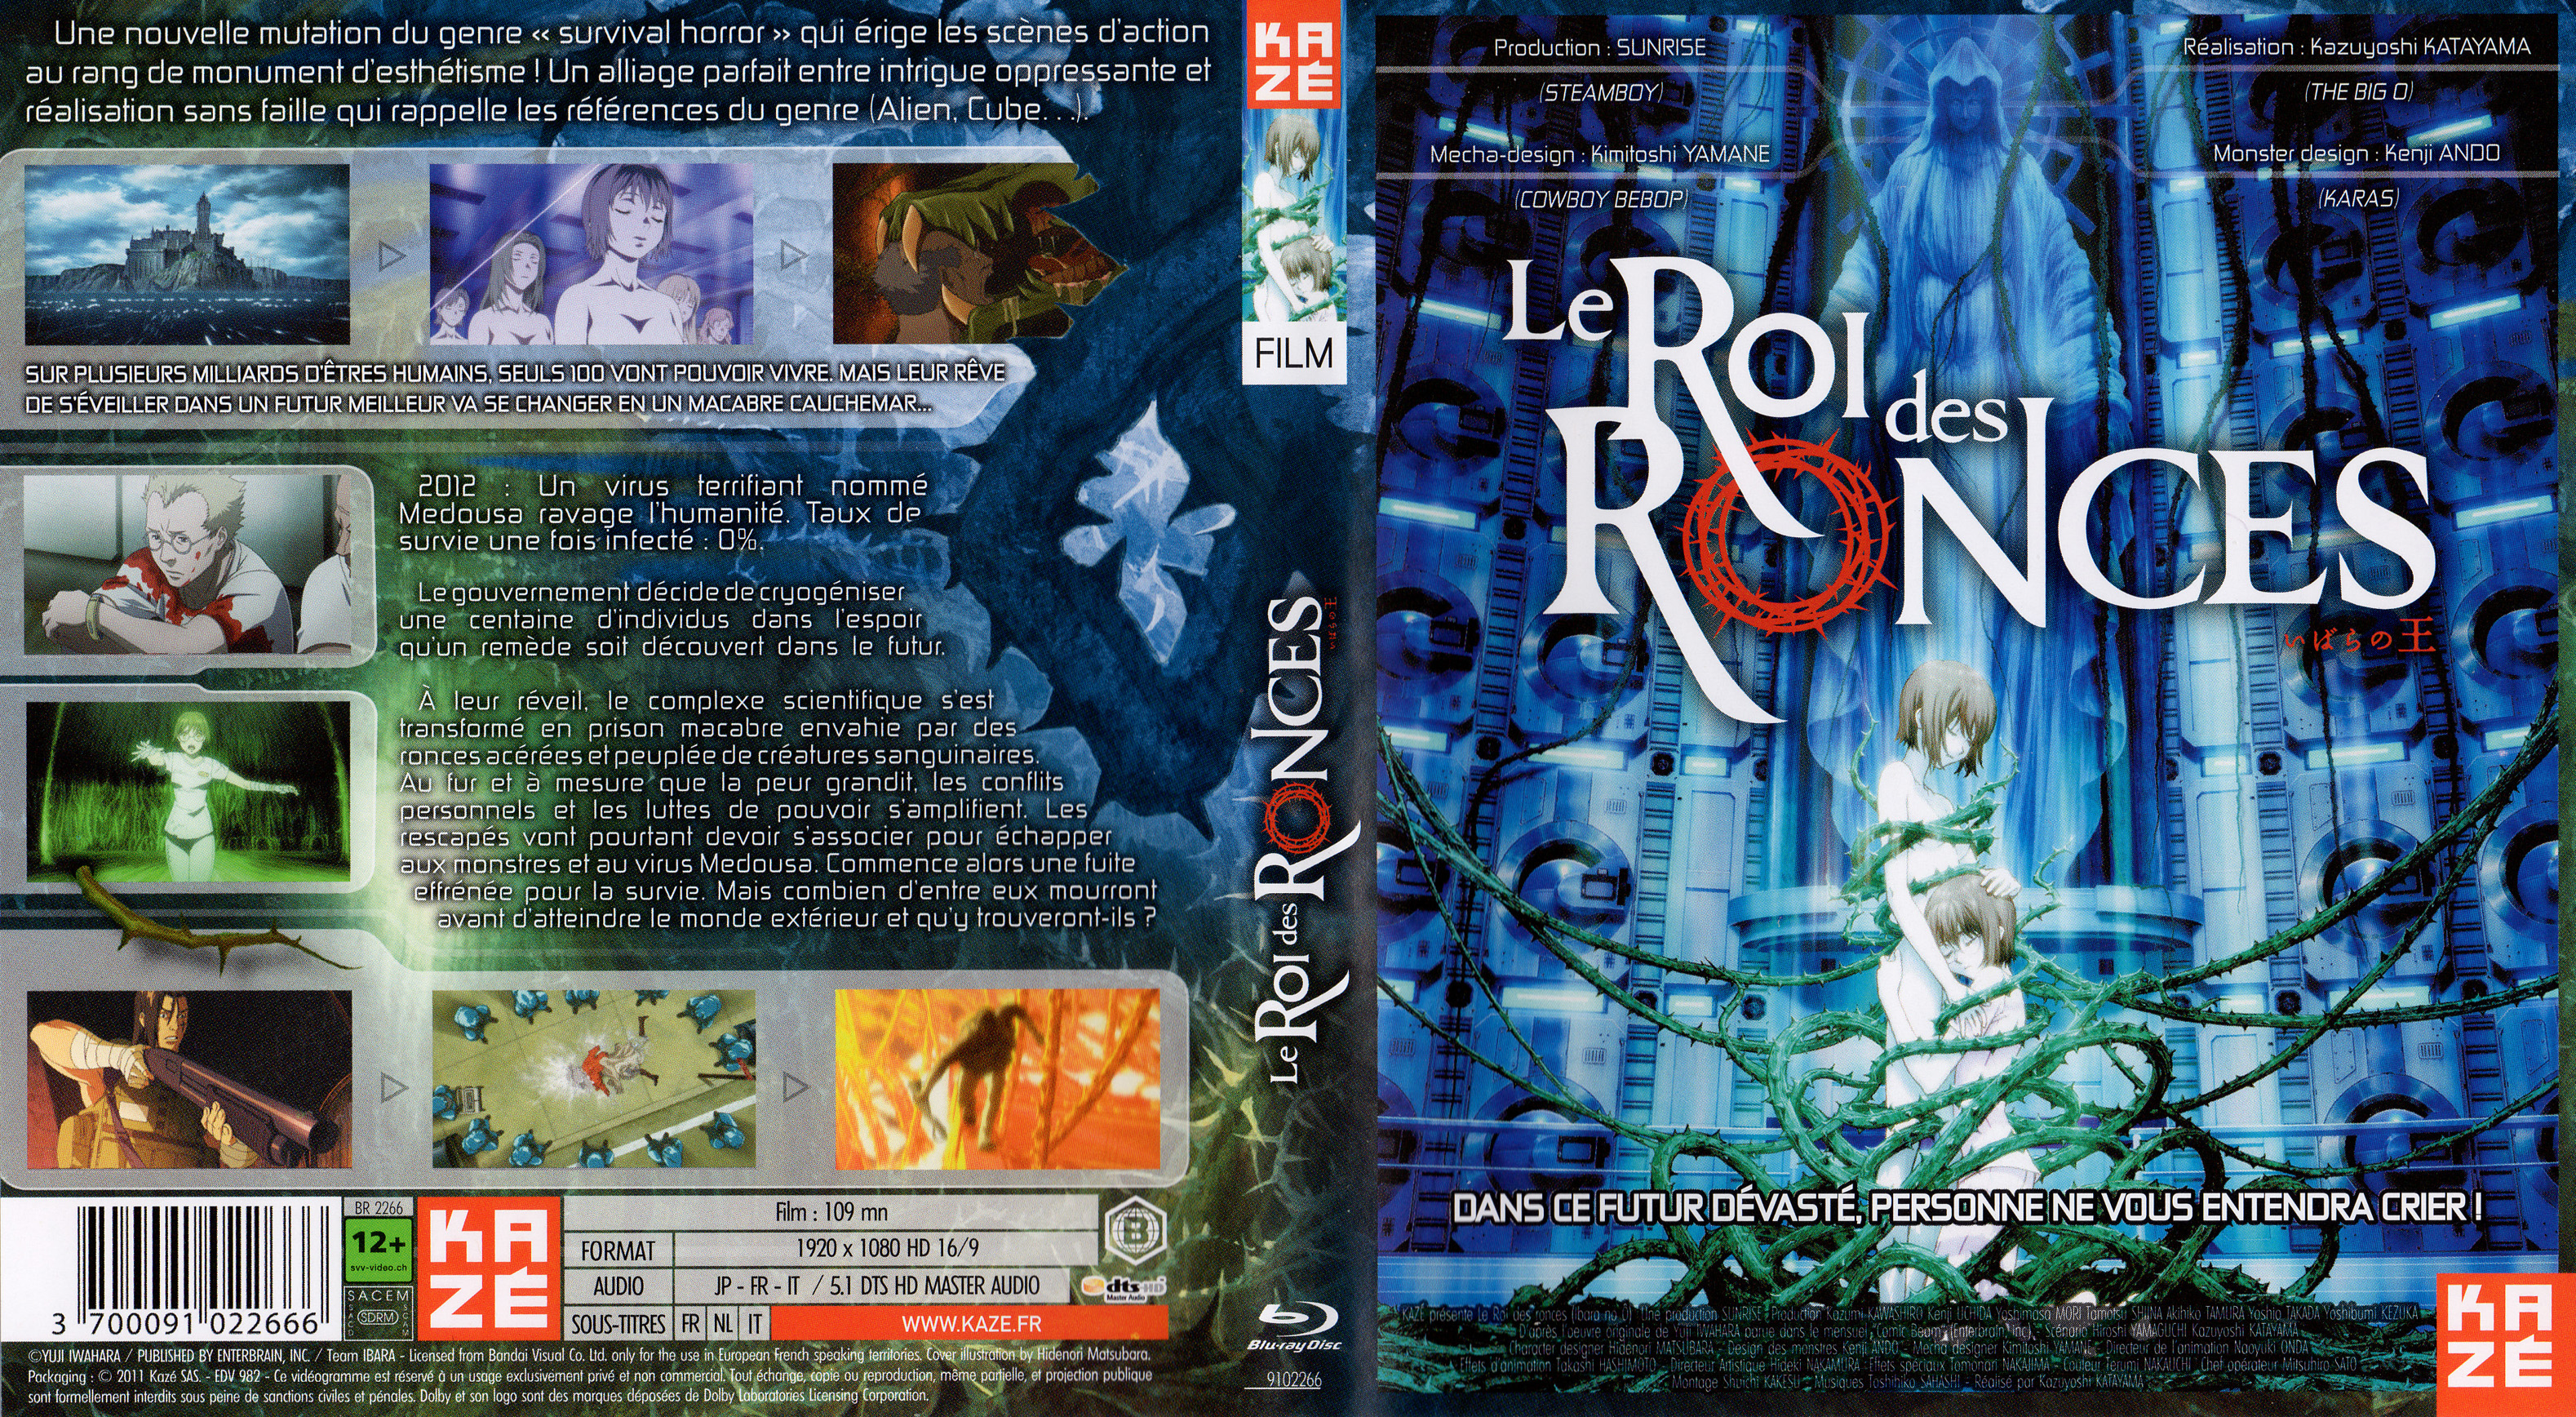 Jaquette DVD Le roi des ronces (BLU-RAY)